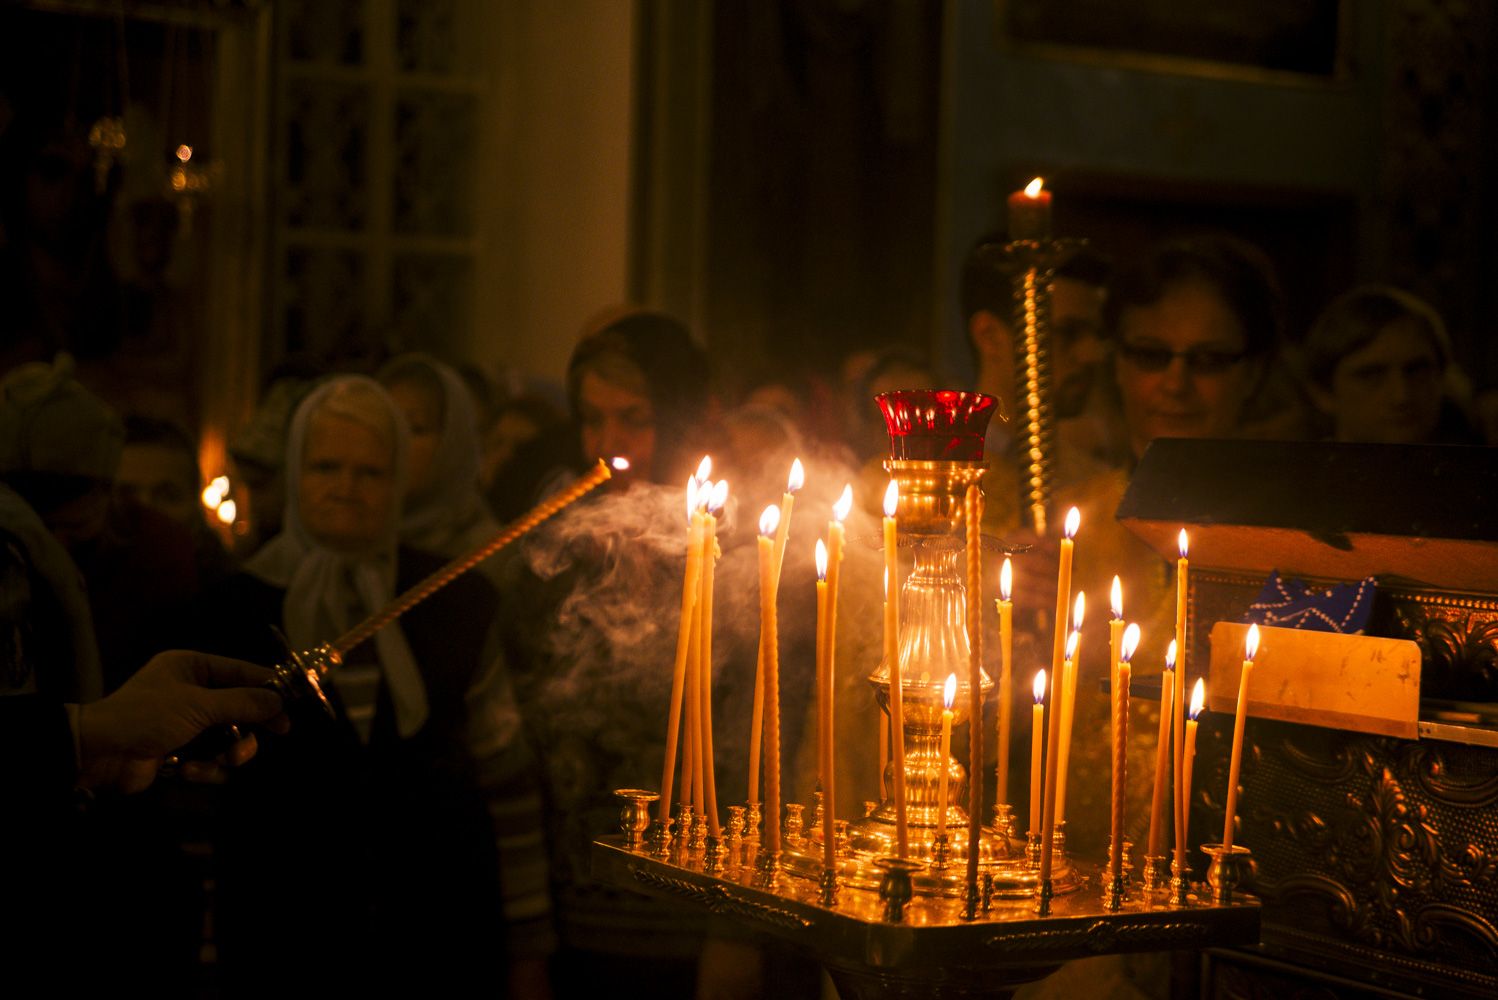 В церкви горят свечи. Свечи в храме. Горящие свечи в храме. Свечи в храме на Рождество. Зажженная церковная свеча.